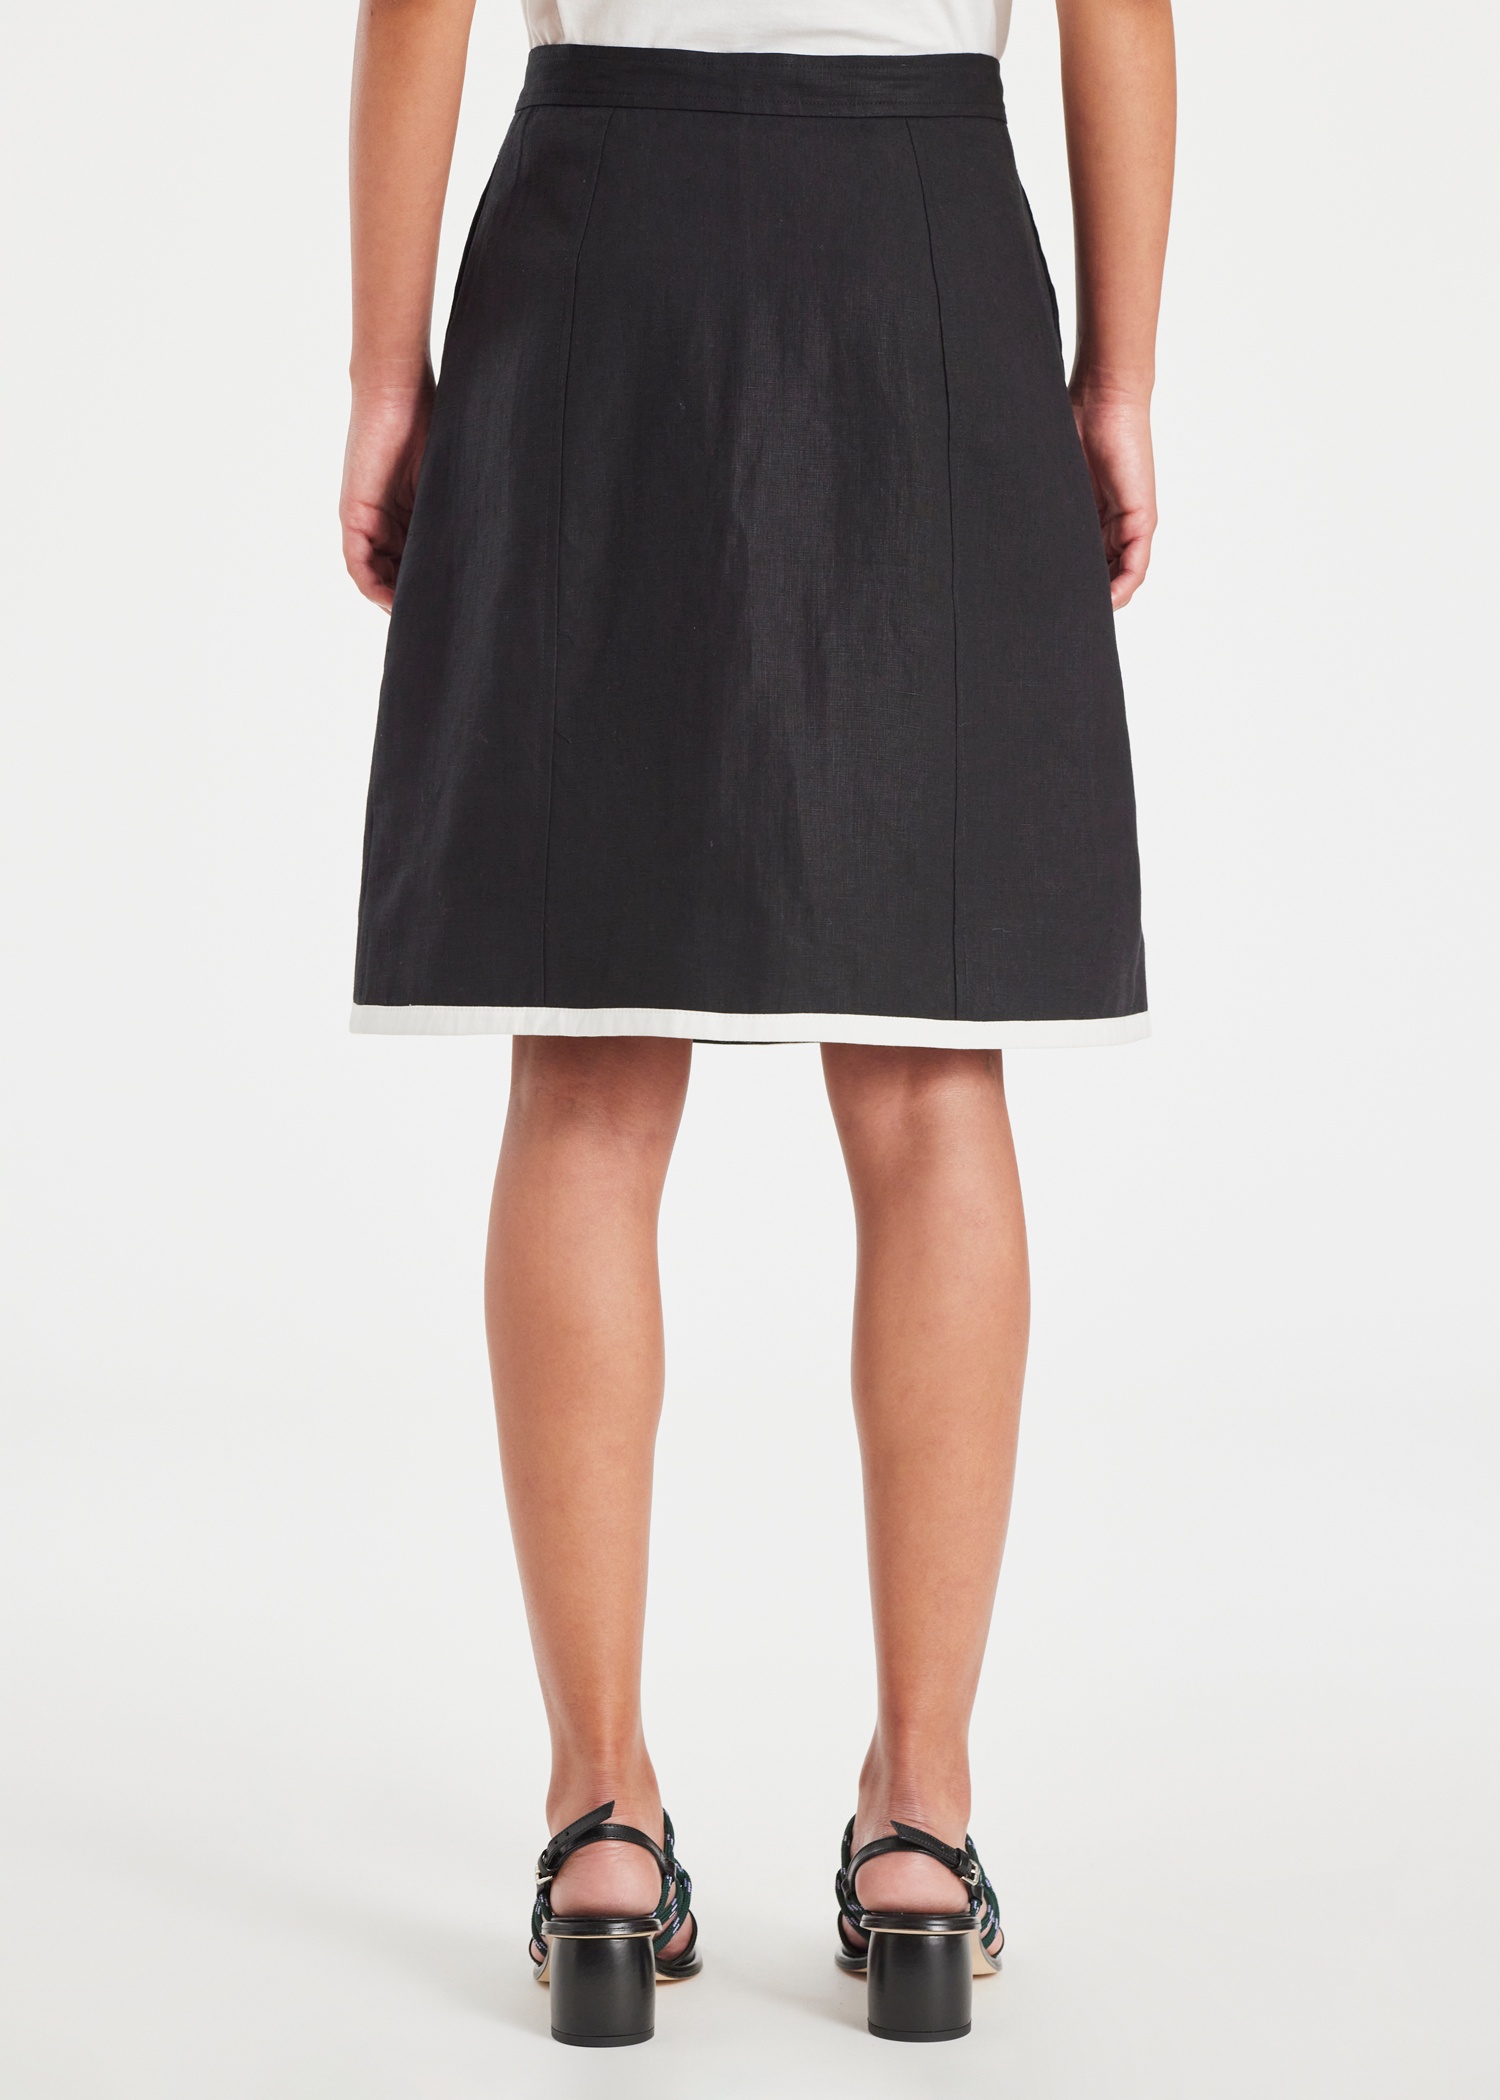 Women's Black Linen Wrap Skirt - 5